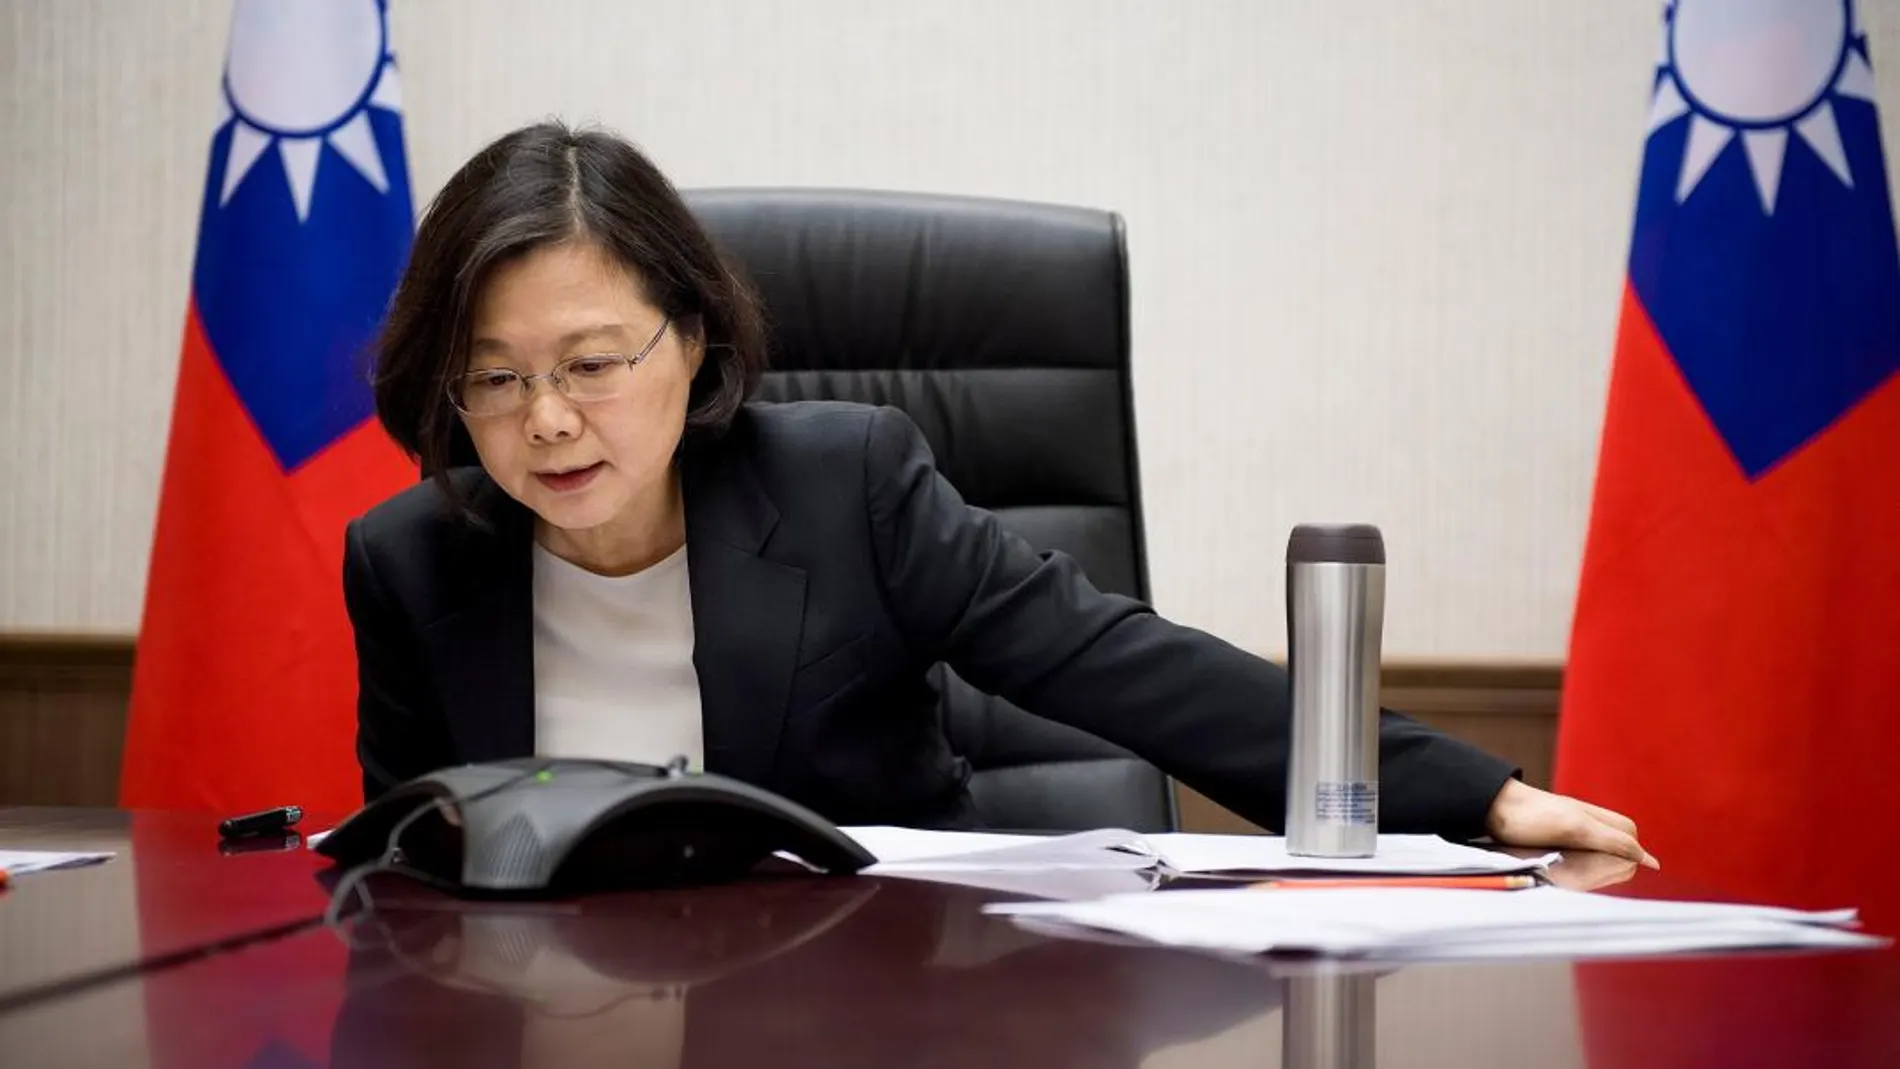 La presidenta de Taiwan, Tsai Ing-wen, habla por teléfono con el presidente de Estados Unidos Donald Trump, en una imagen de archivo.